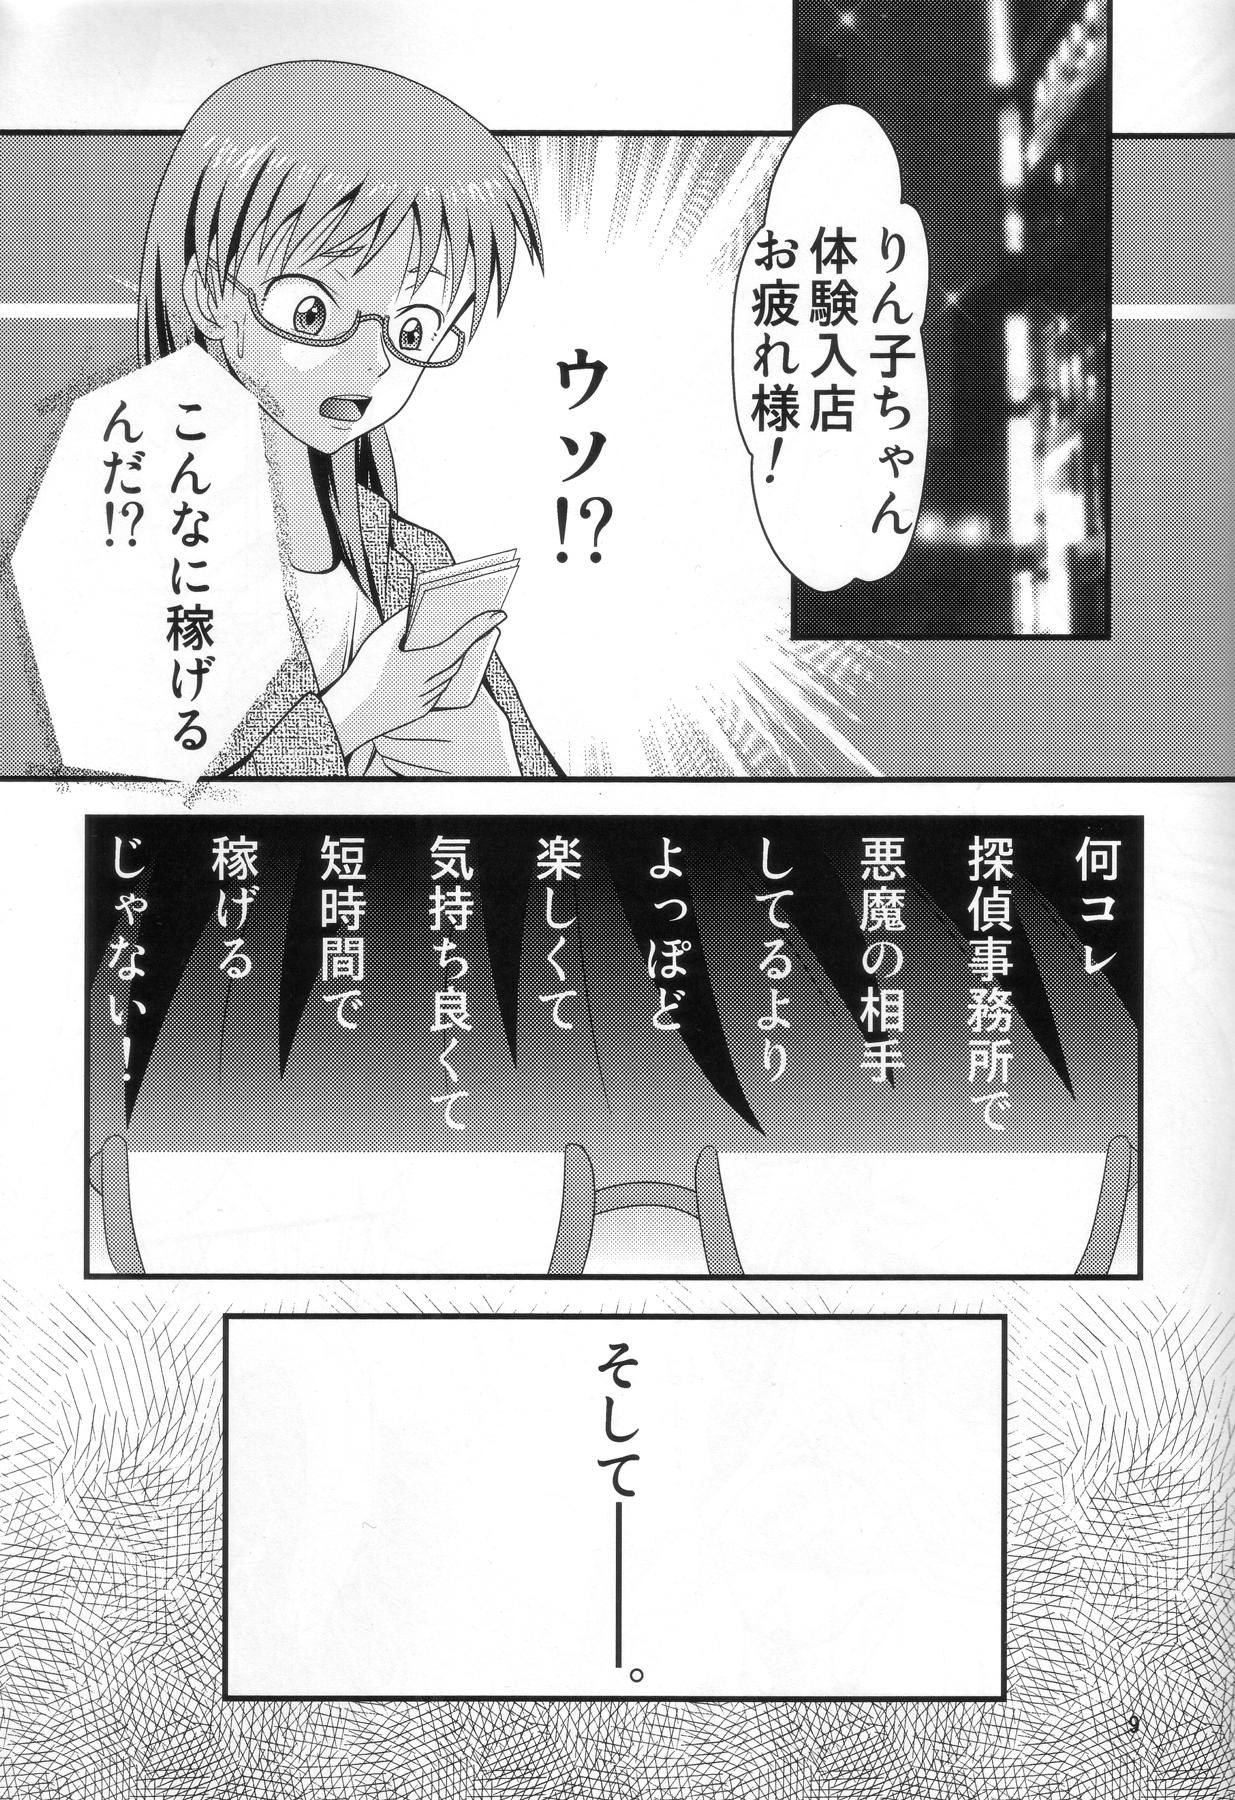 Stockings 七変化ですよ、佐隈さん。 - Yondemasuyo azazel-san Naija - Page 8